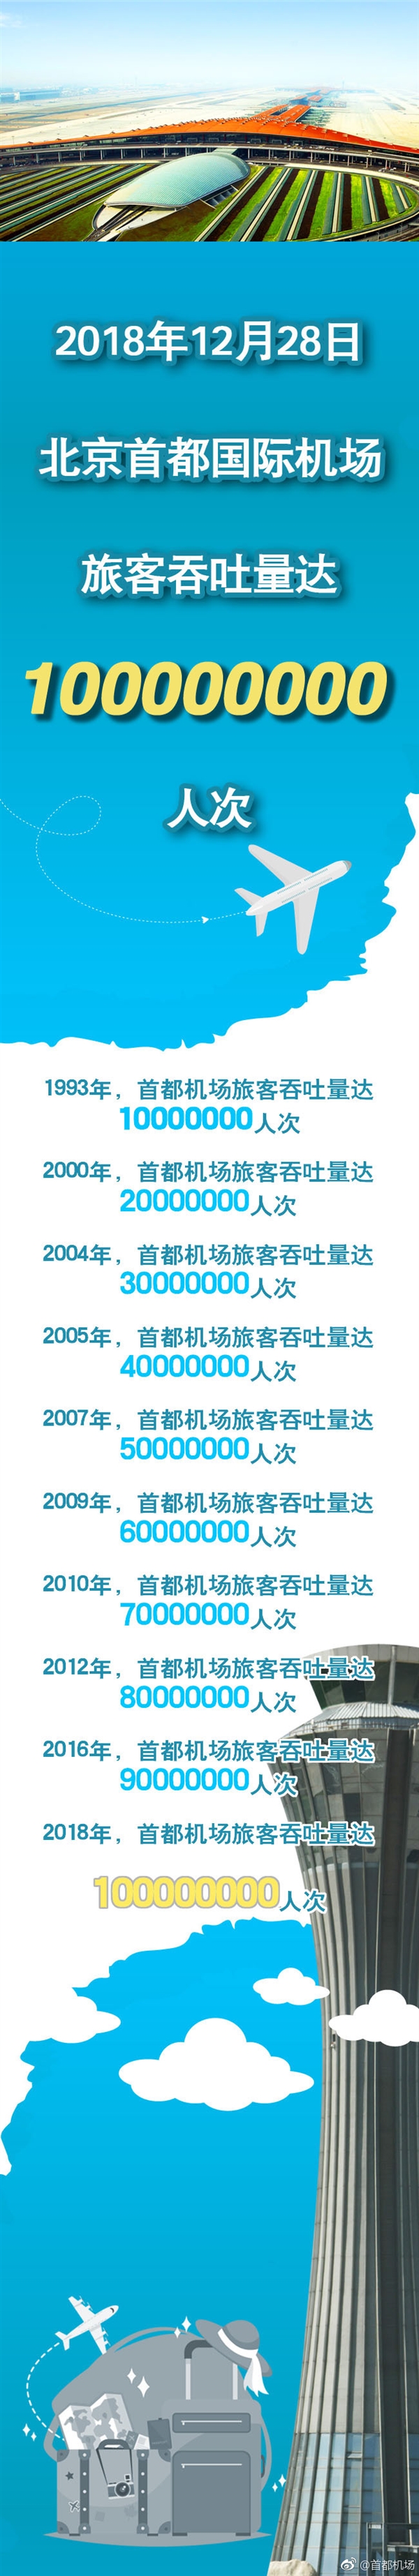 北京首都机场年旅客吞吐量突破1亿人次：亚洲第一 世界第二